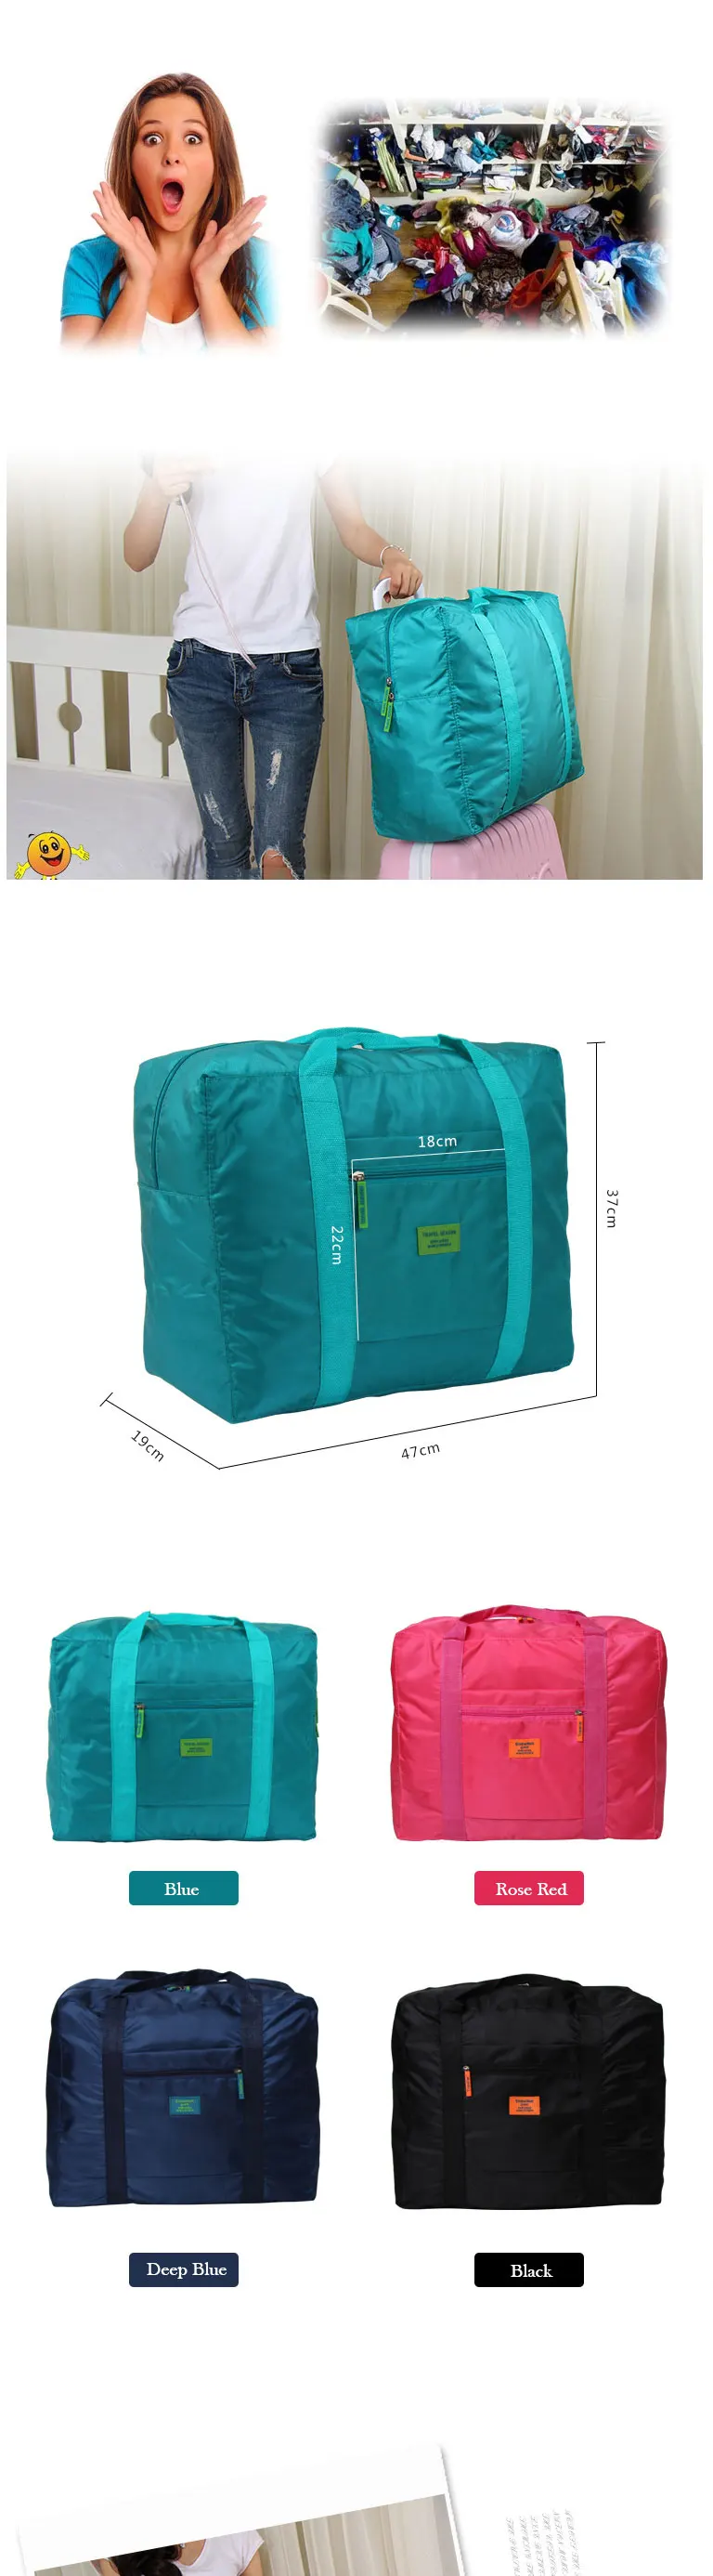 Унисекс Большой ёмкость многофункциональная сумка для путешествий Мода l легкий водостойкий складной хранения нести чемодан Duffle сумка